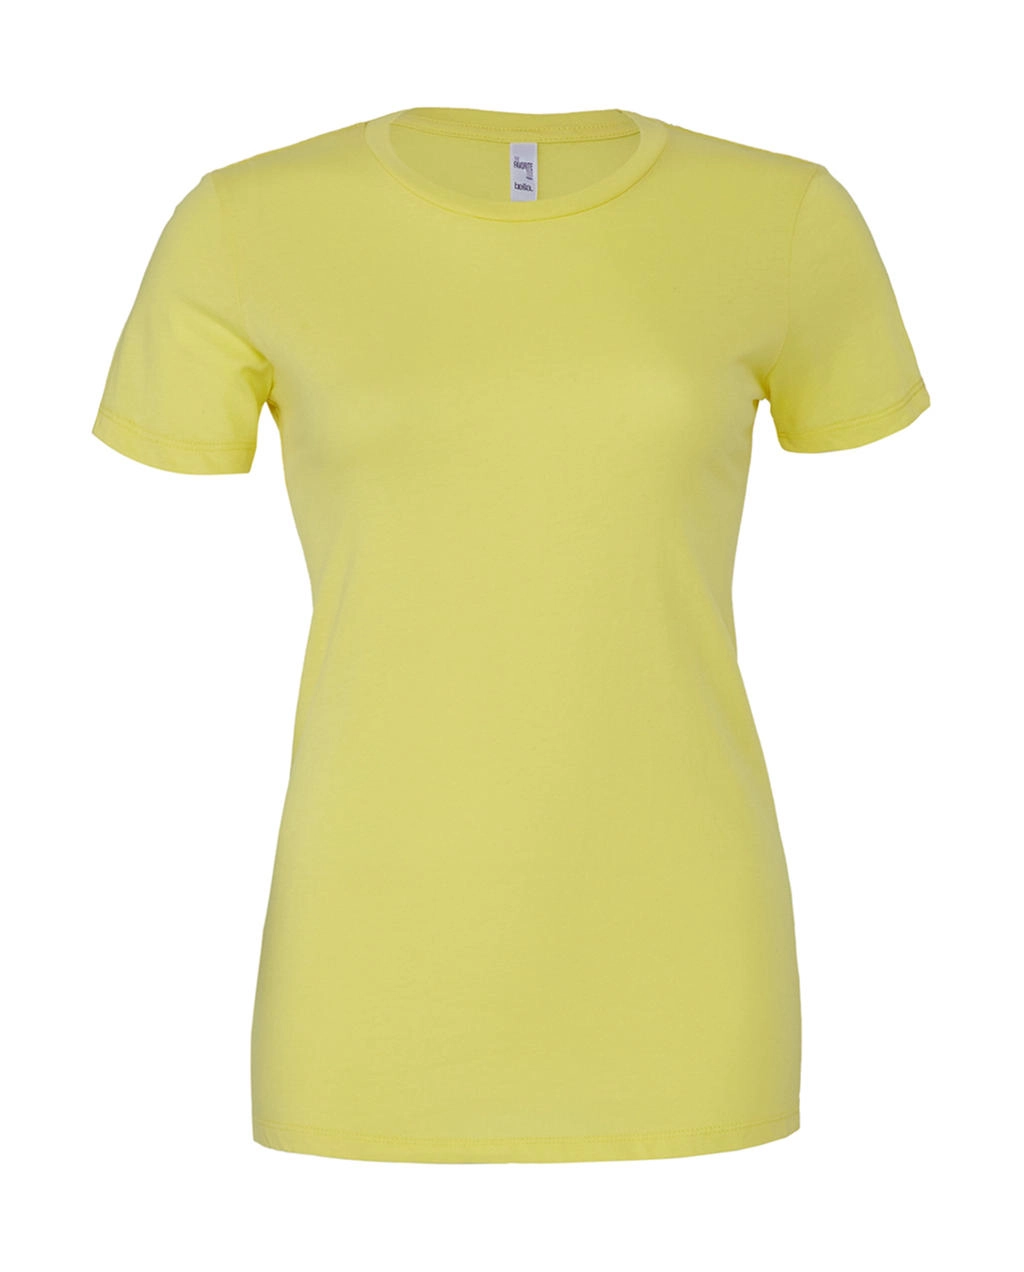 The Favorite T-Shirt zum Besticken und Bedrucken in der Farbe Yellow mit Ihren Logo, Schriftzug oder Motiv.